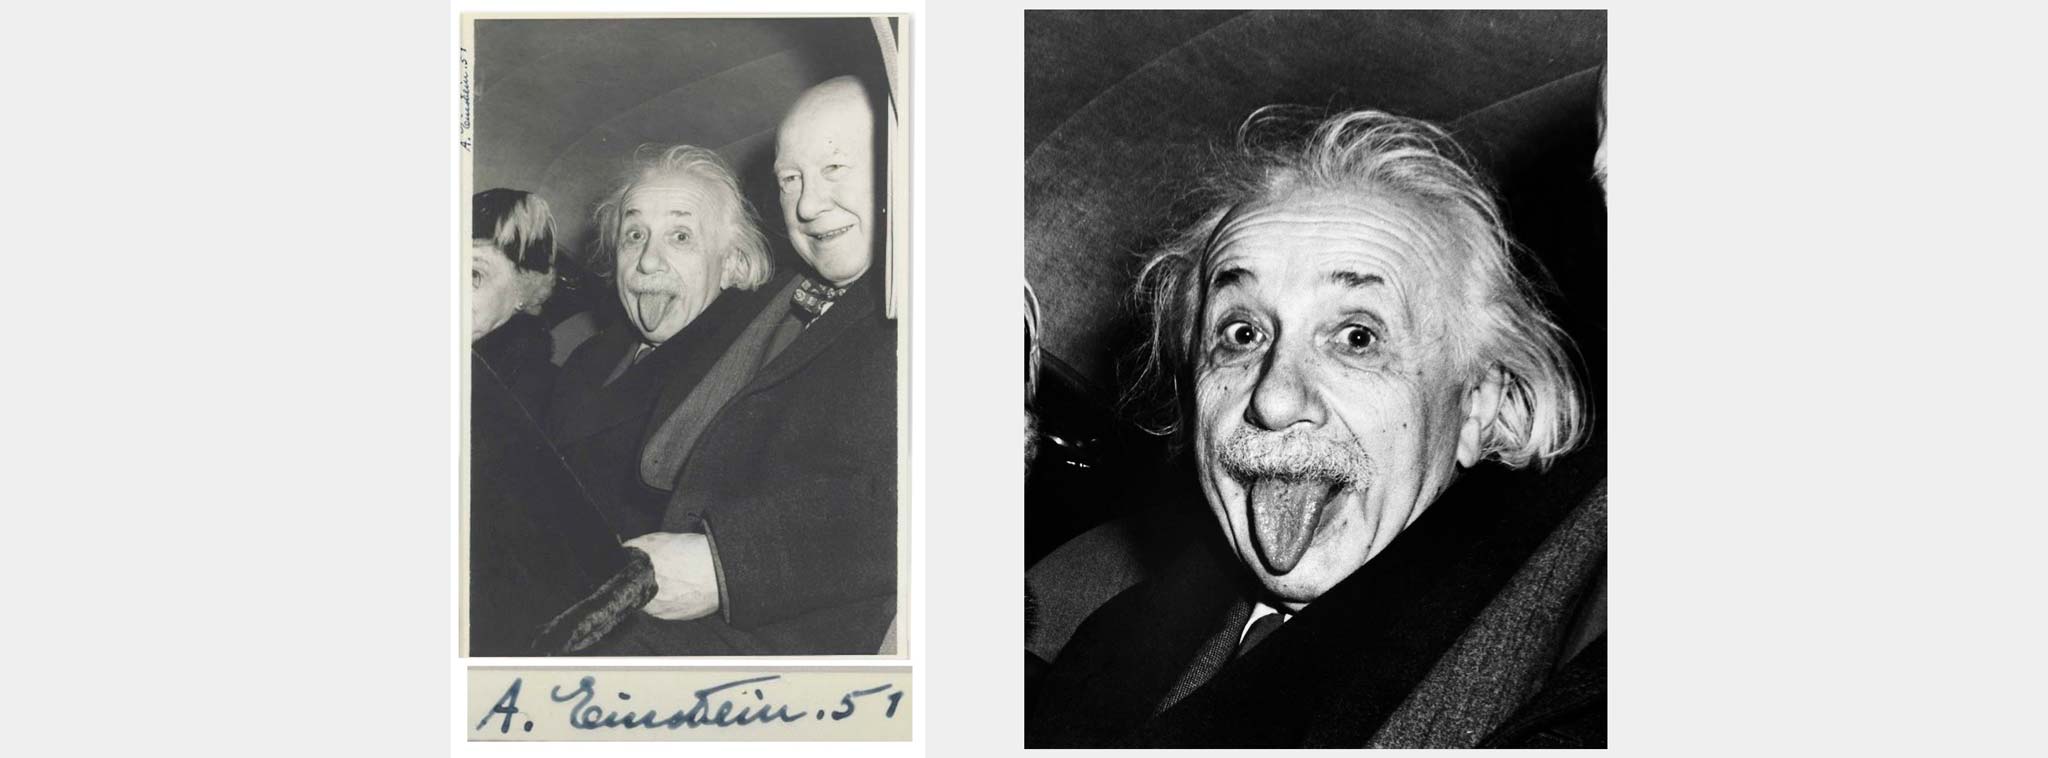 Bức ảnh Einstein thè lưỡi được đấu giá với số tiền 125 ngàn đô la